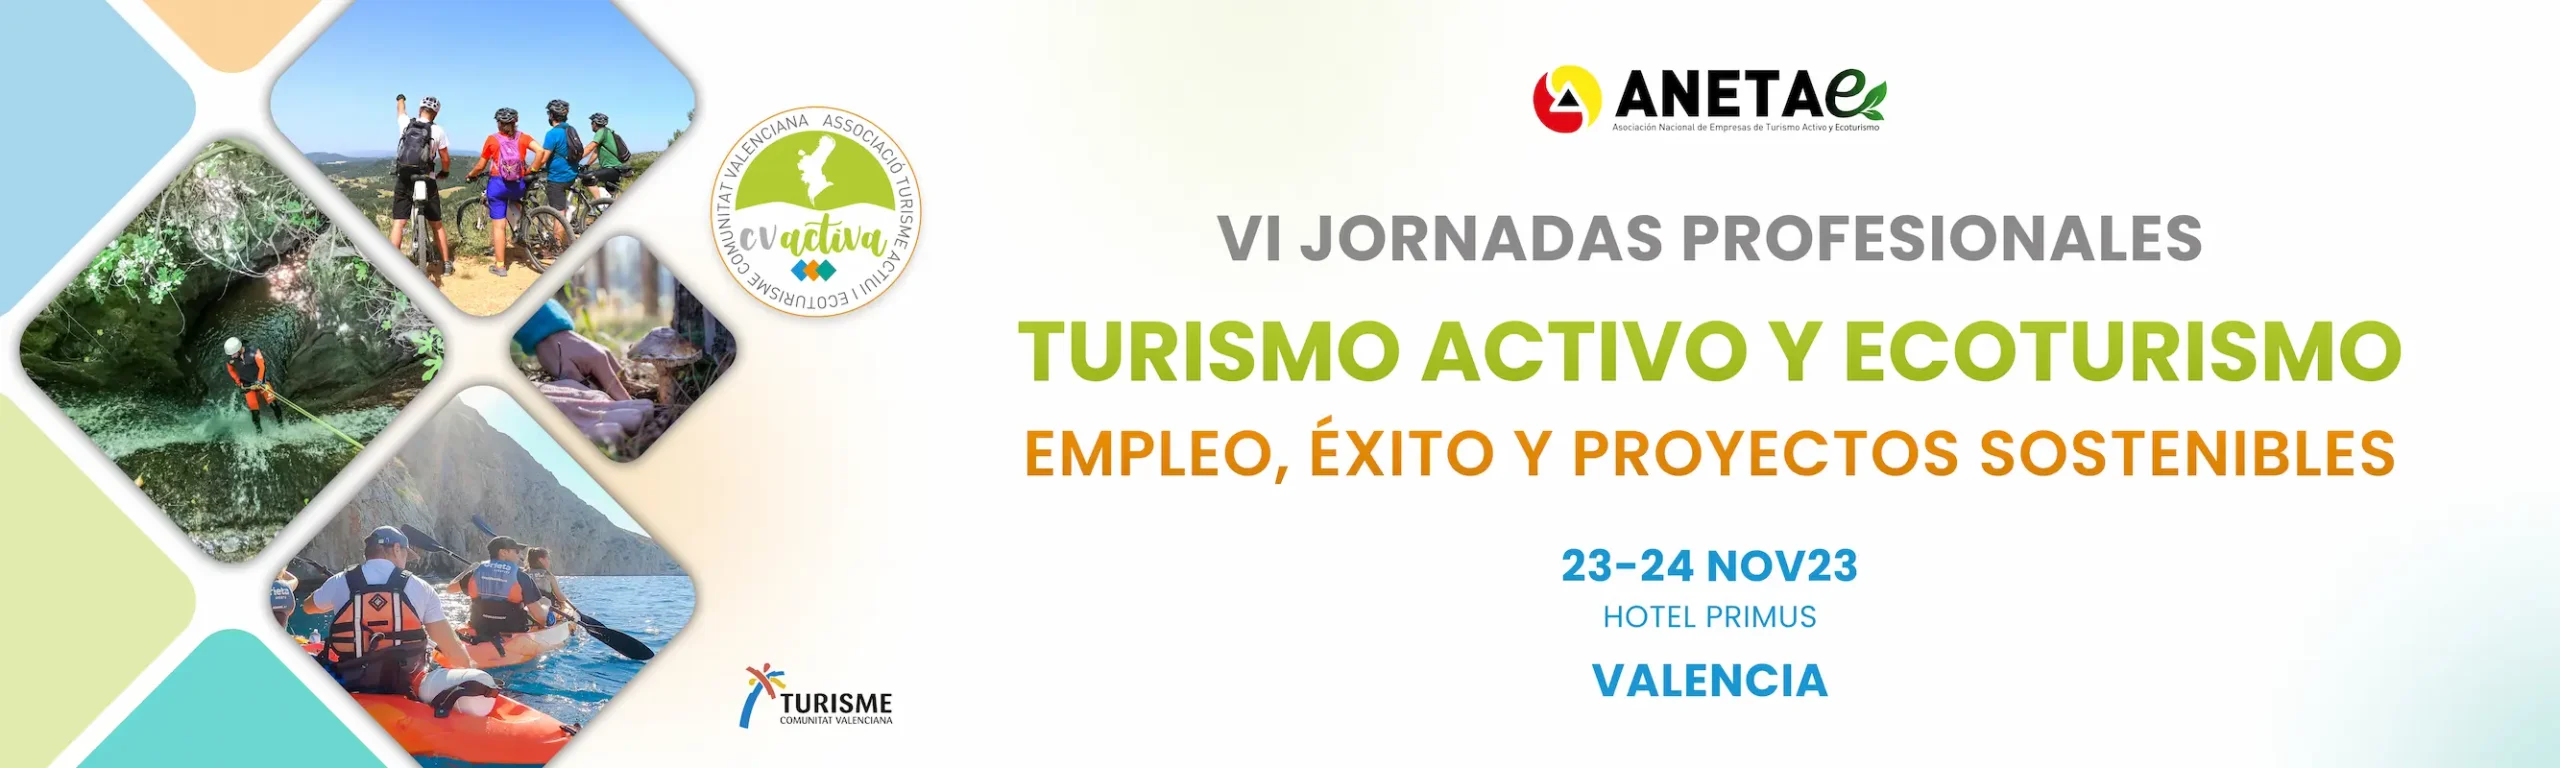 Banner VI Jornadas Profesionales Turismo Activo y Ecoturismo